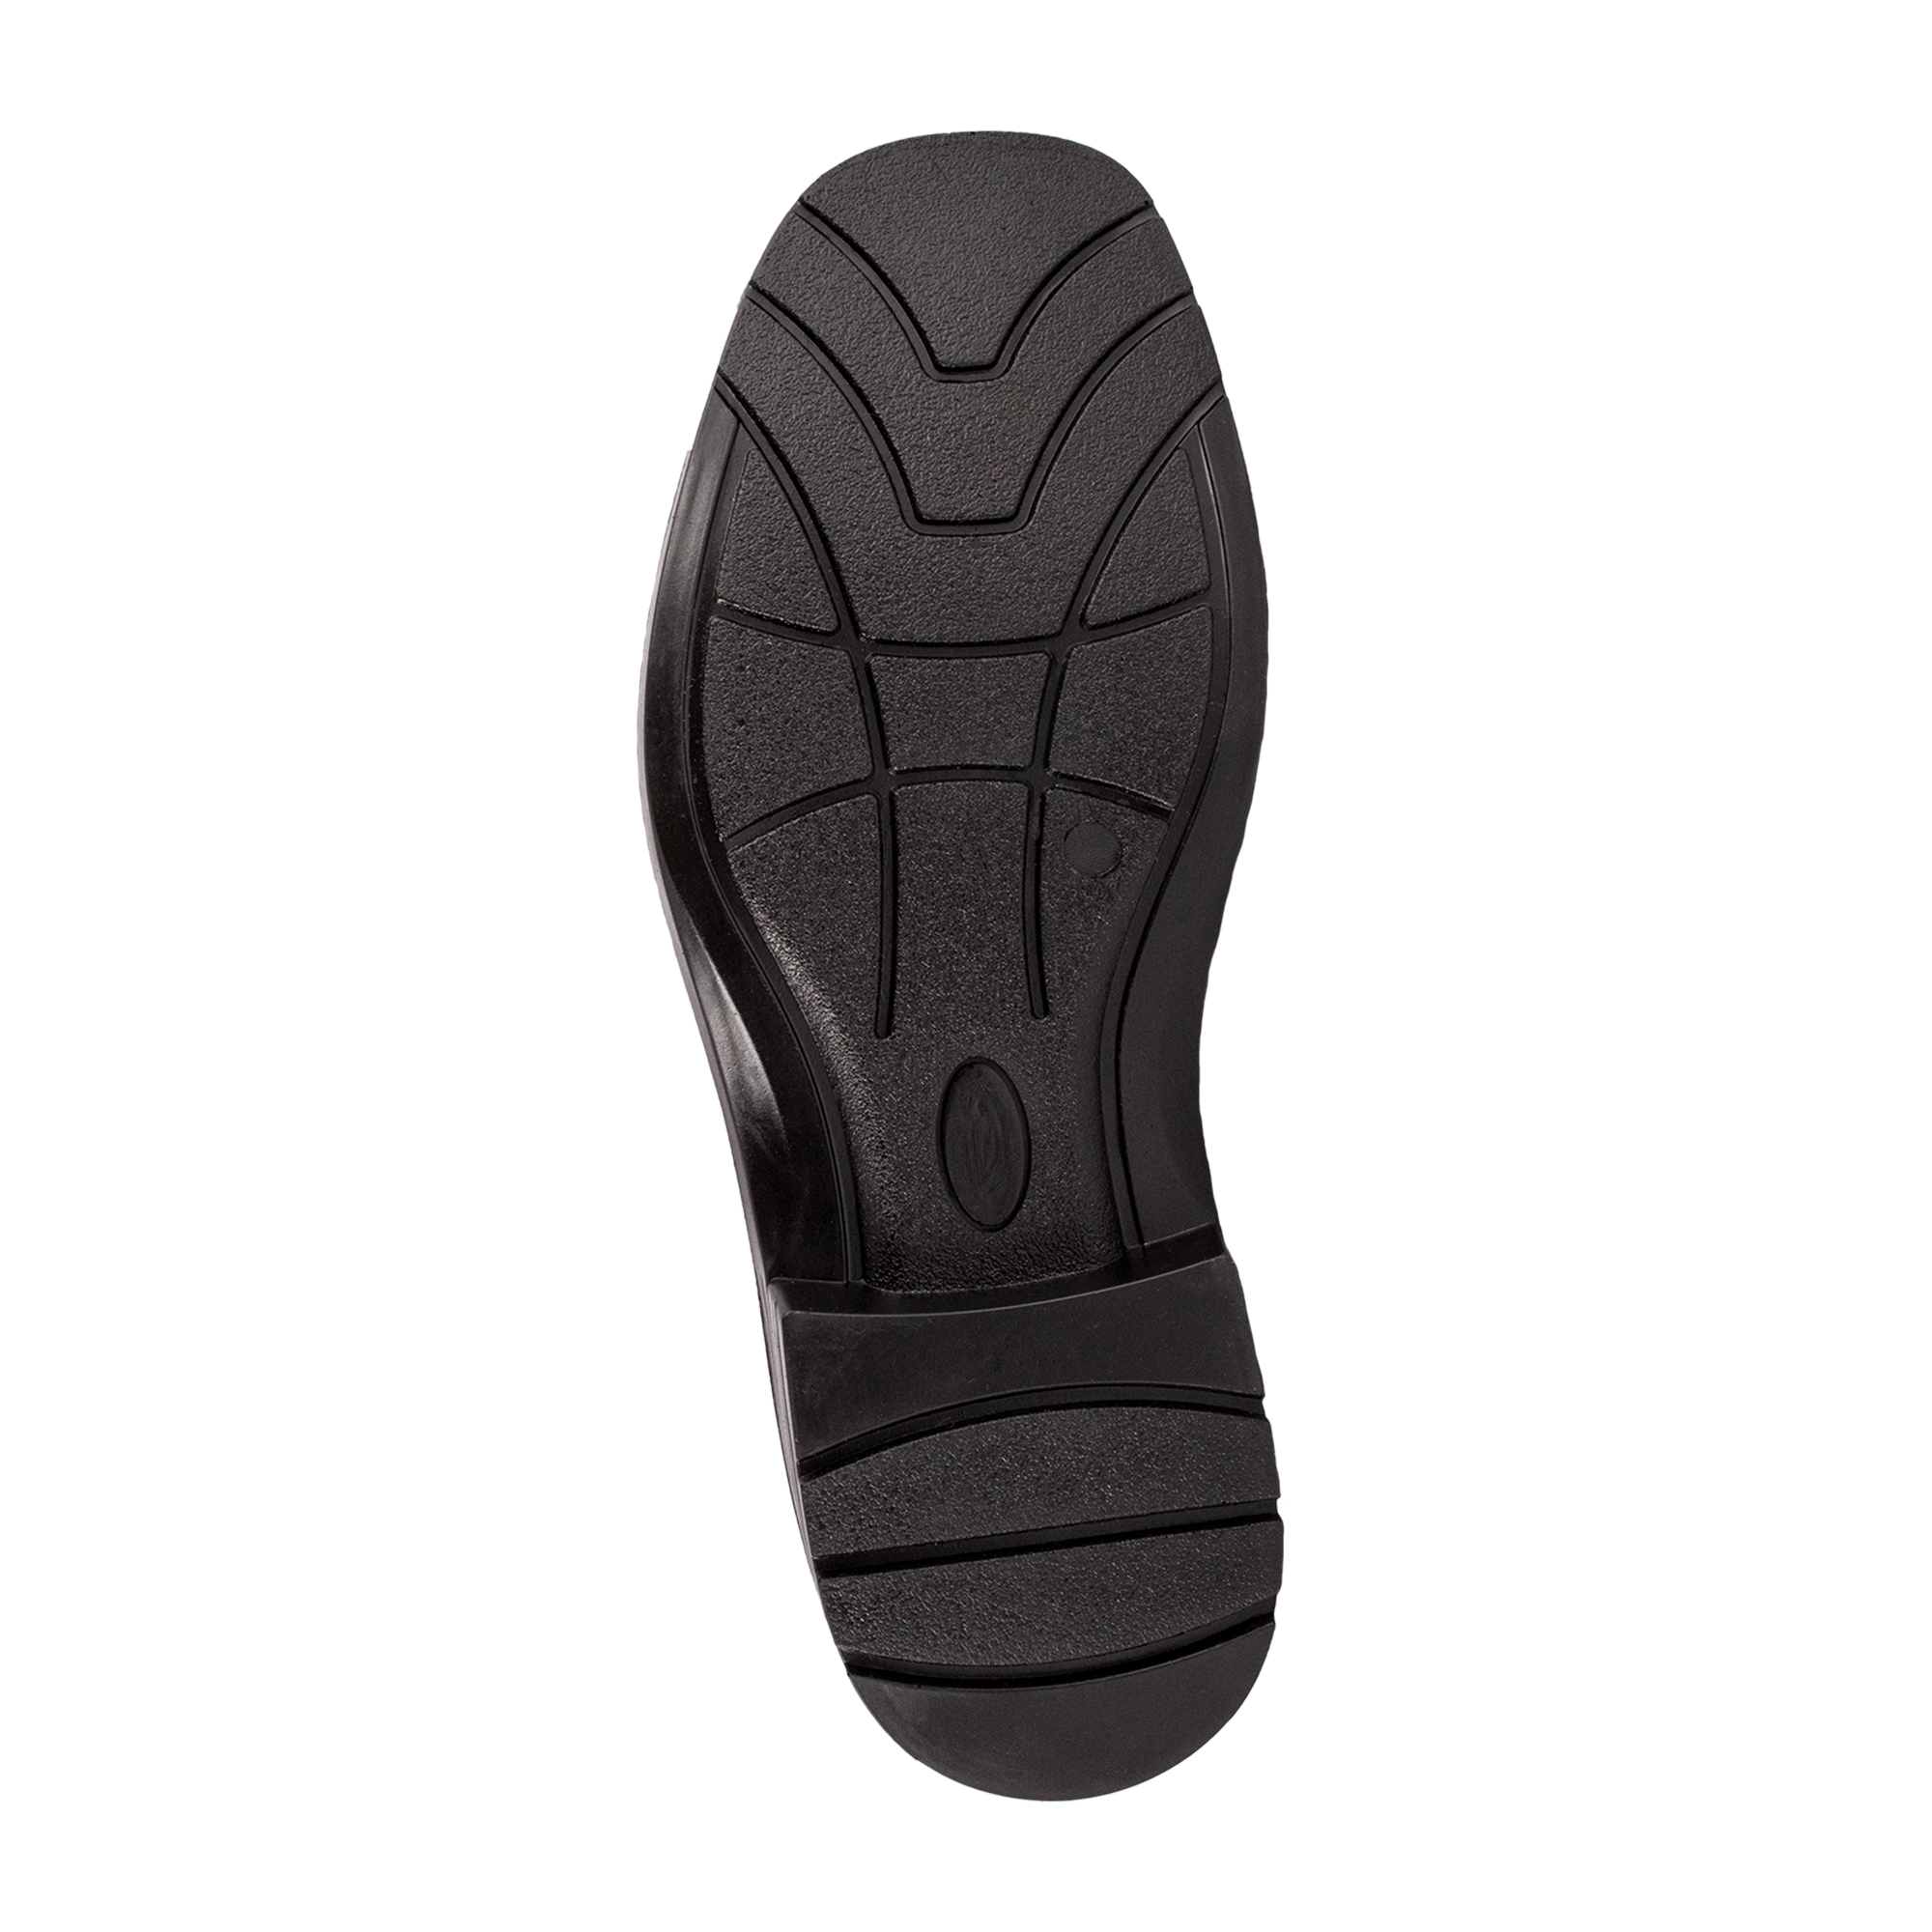 REBEL Nala Ladies Safety Boot - Protekta Safety Gear